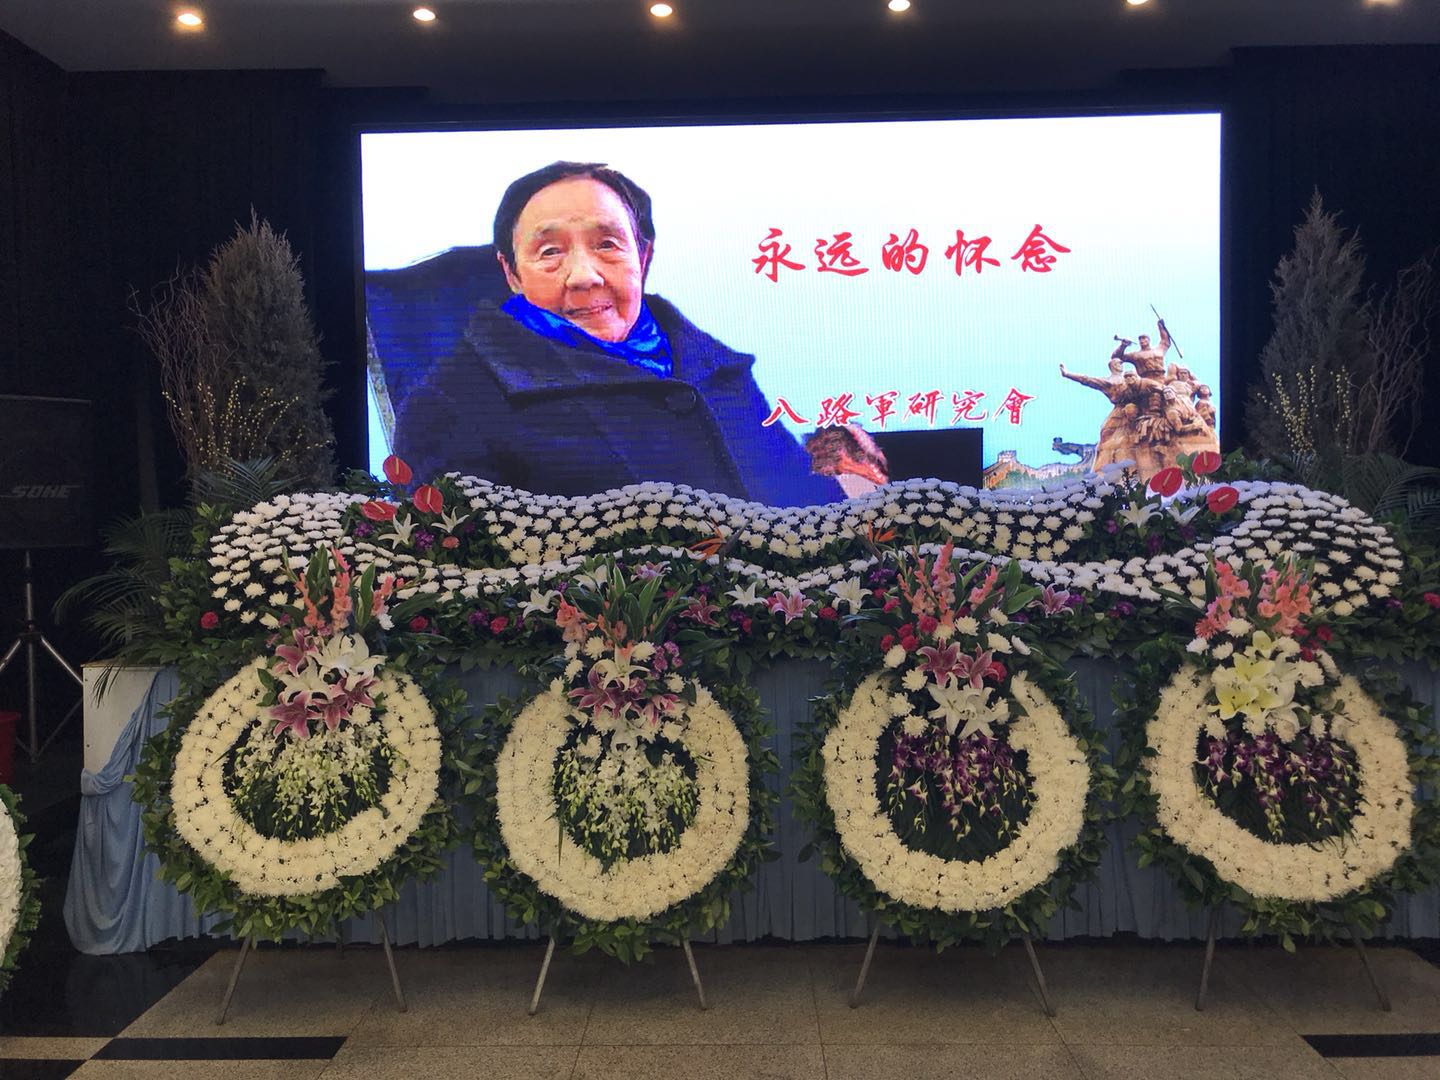 沉痛悼念永远缅怀----赵勋敏同志追悼会在京举行